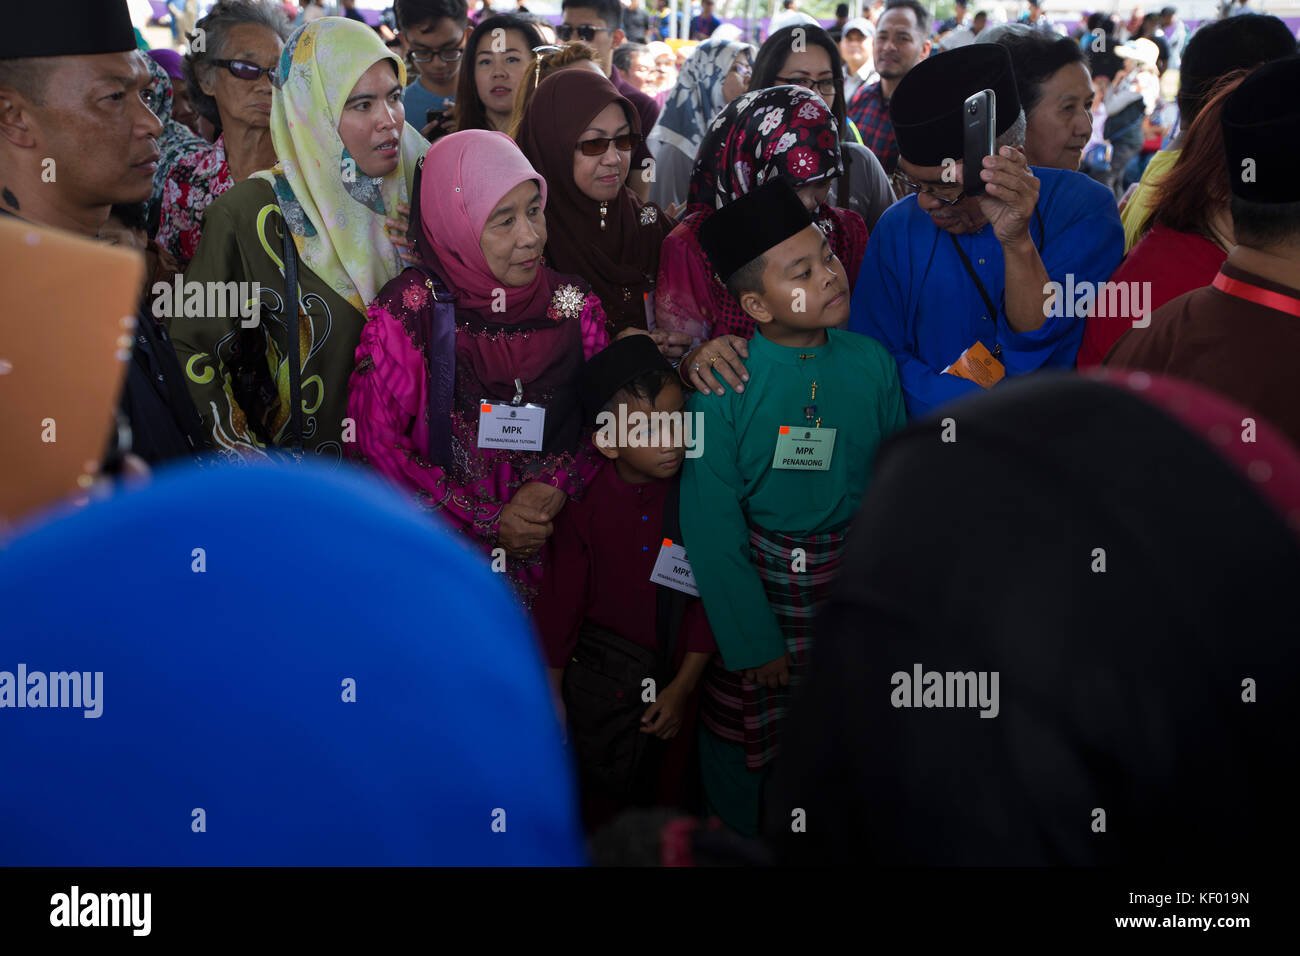 Las multitudes queueing para satisfacer el sultán de Brunei antes de una ceremonia para abrir un nuevo puente en Bandar Seri Begawan, parte de las celebraciones de los 50 años del Sultán en el trono. El sultán de Brunei Hassanal Bolkiah marcan sus 50 años en el trono durante el mes de octubre de 2017 con una serie de oro extravagante celebración jubilar. Bandar Seri Begawan es la capital de Brunei, una nación pequeña en la isla de Borneo Foto de stock